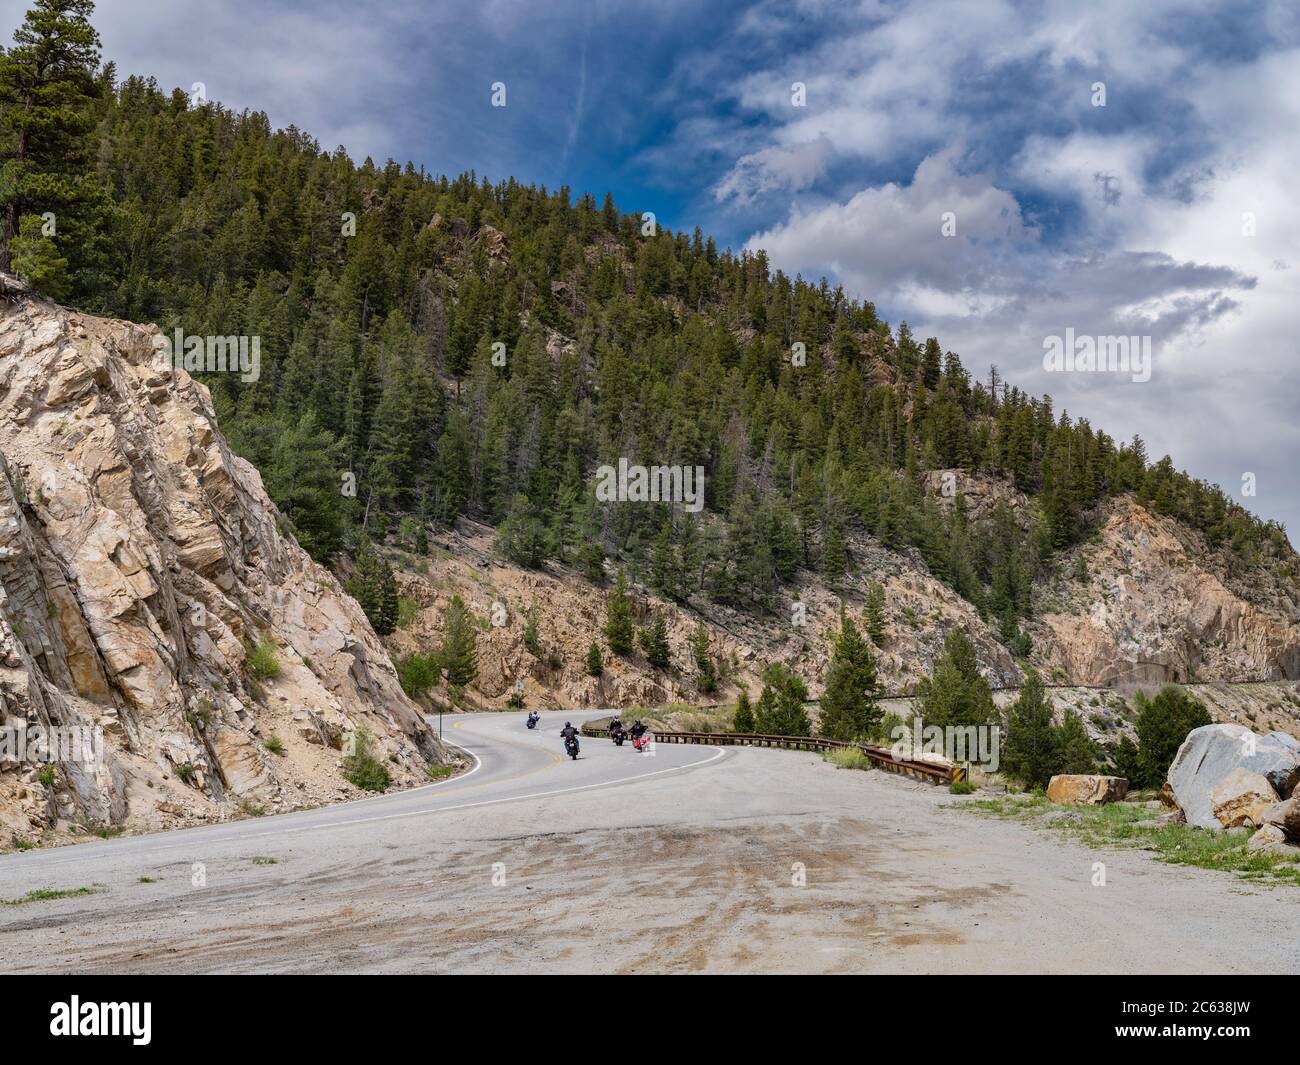 Groupe de motos sur l'autoroute courbée à travers les montagnes rocheuses, Colorado, États-Unis Banque D'Images